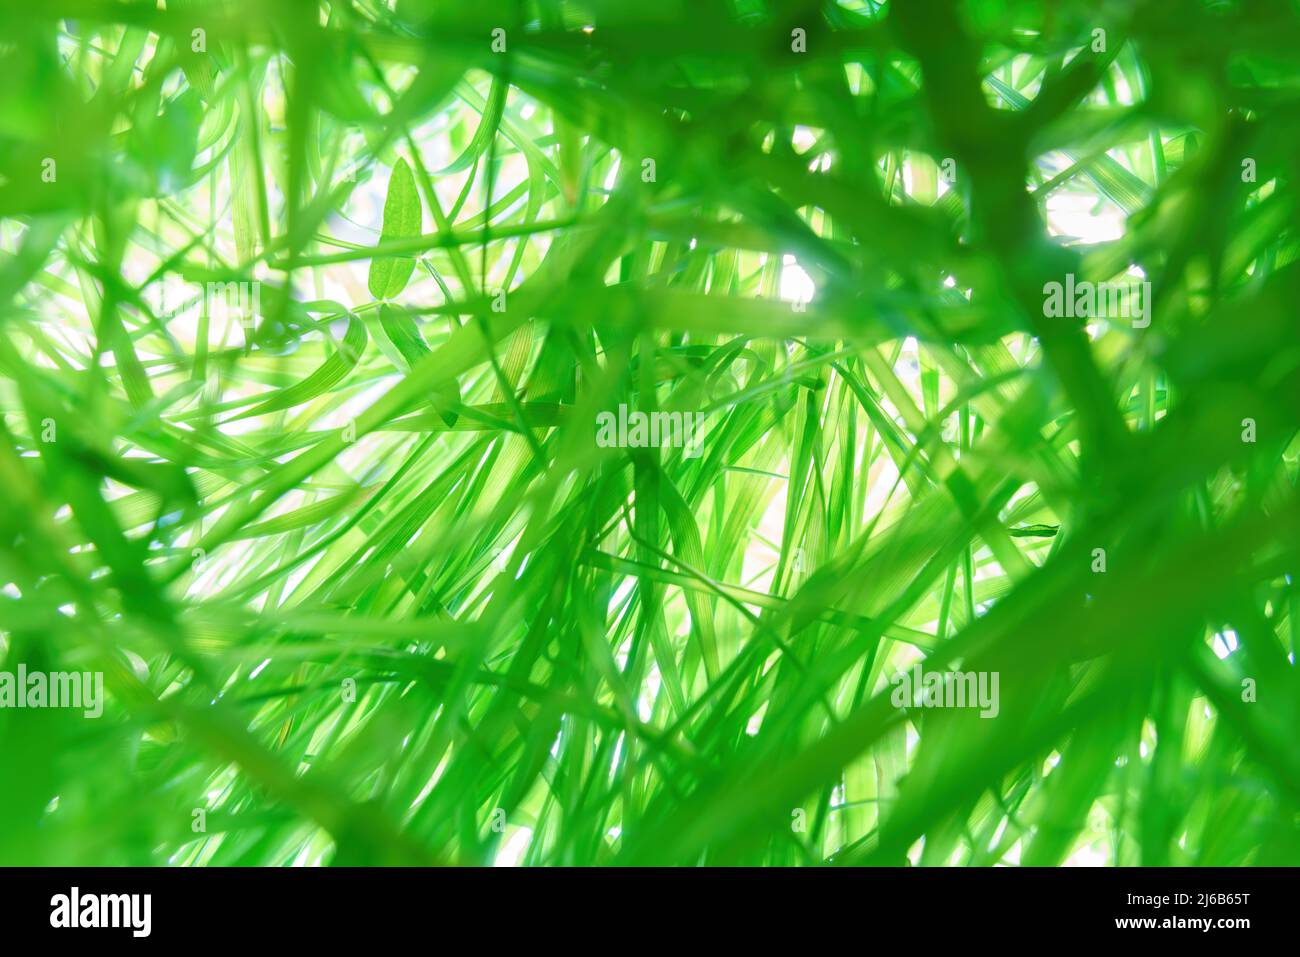 Durch sie verstrickt sich dickes grünes Gras und weißes Licht. Ansicht von unten nach oben, selektiver Fokus auf das Gras Stockfoto